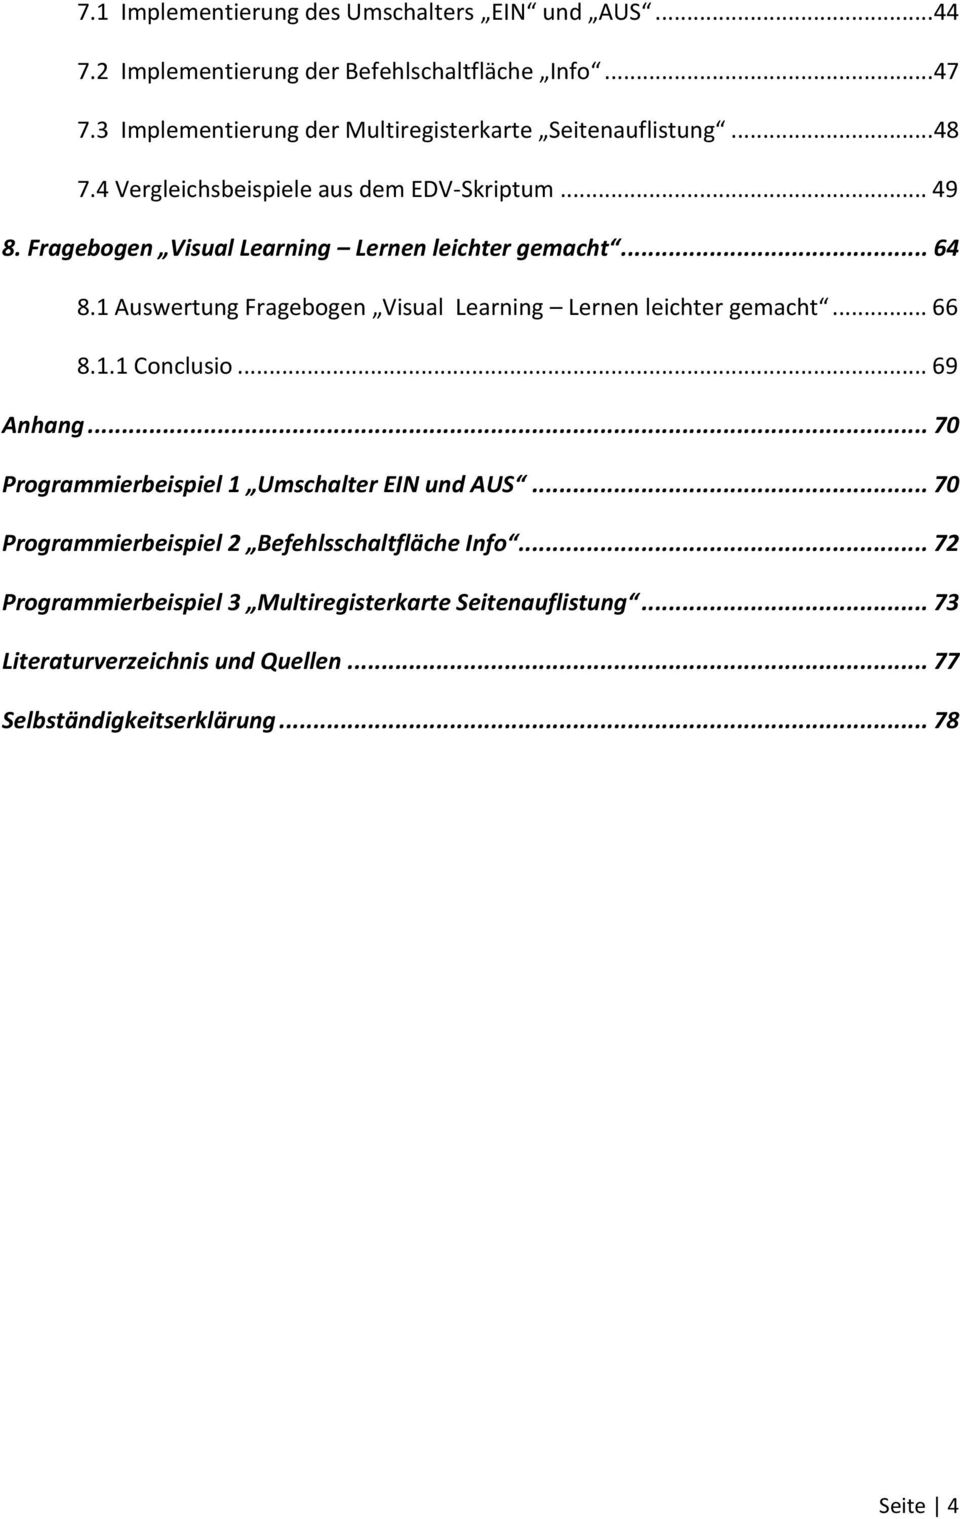 Fragebogen Visual Learning Lernen leichter gemacht... 64 8.1 Auswertung Fragebogen Visual Learning Lernen leichter gemacht... 66 8.1.1 Conclusio... 69 Anhang.